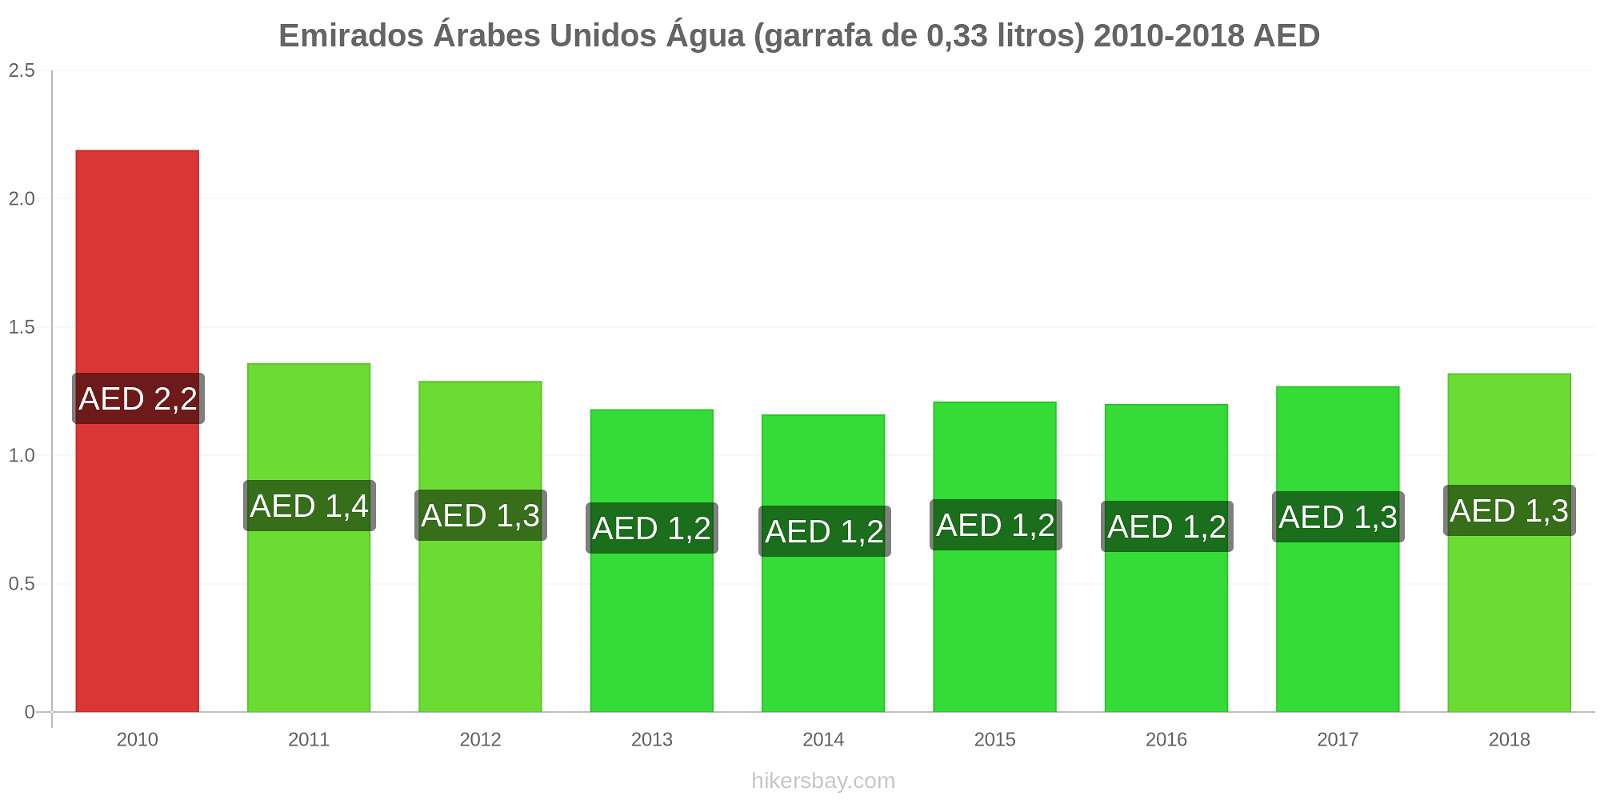 Emirados Árabes Unidos mudanças de preços Água (garrafa de 0.33 litros) hikersbay.com